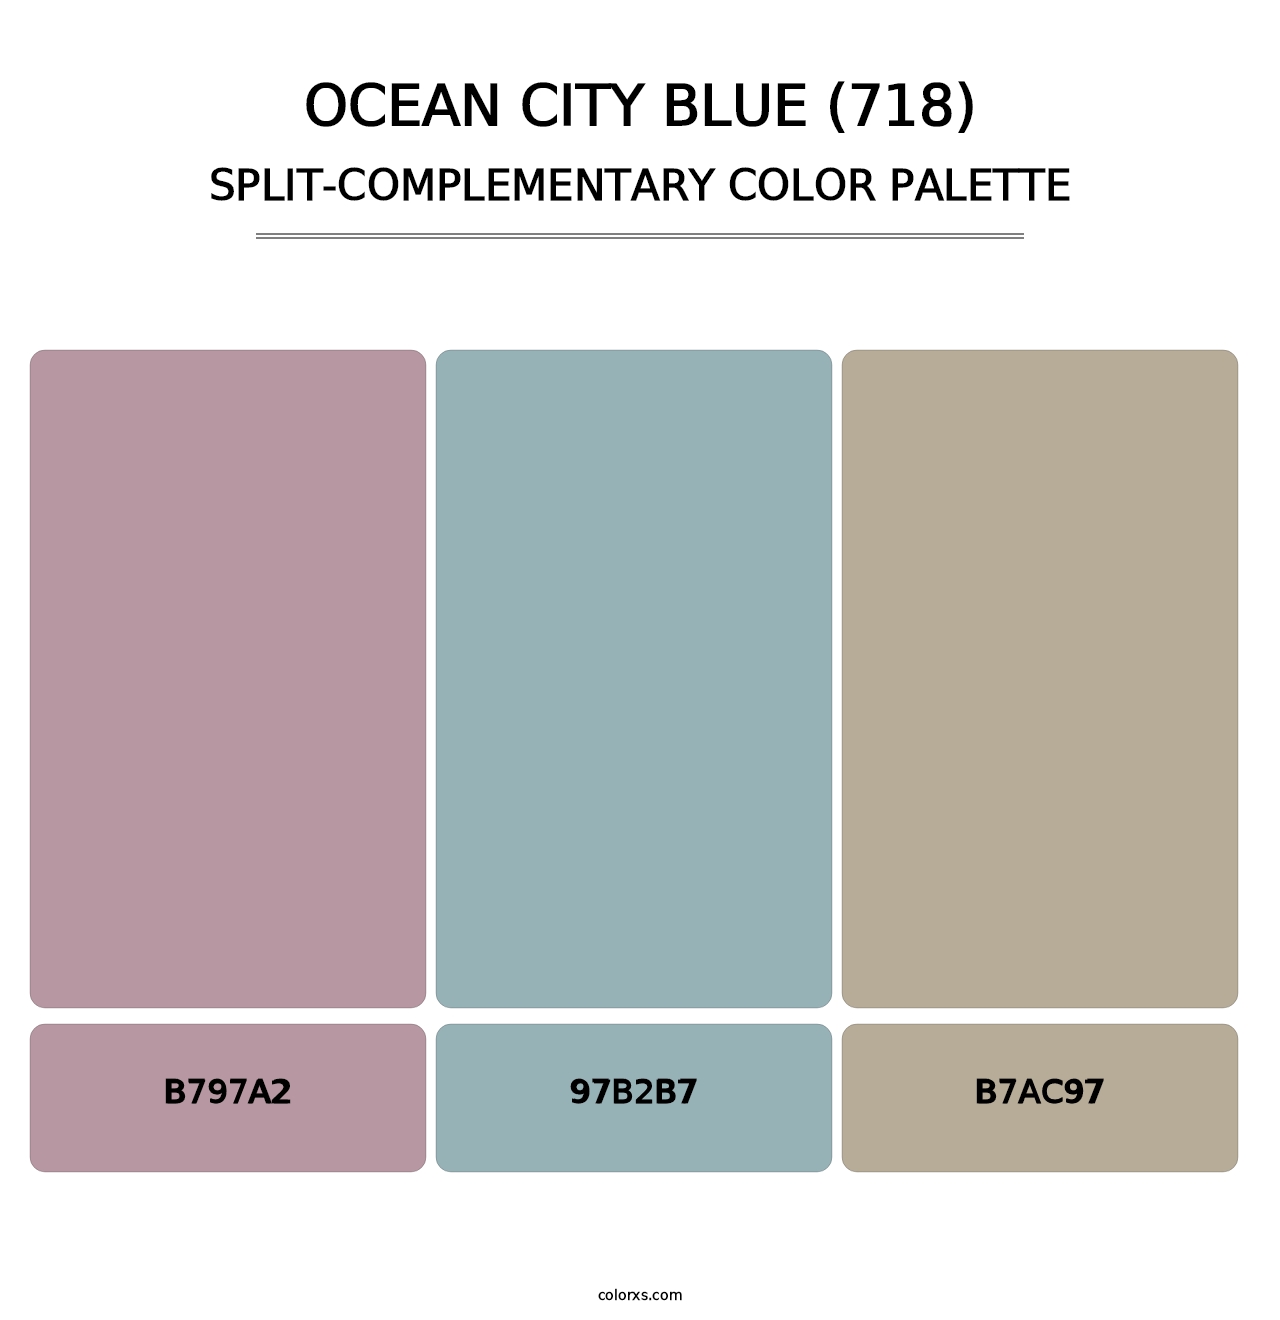 Ocean City Blue (718) - Split-Complementary Color Palette